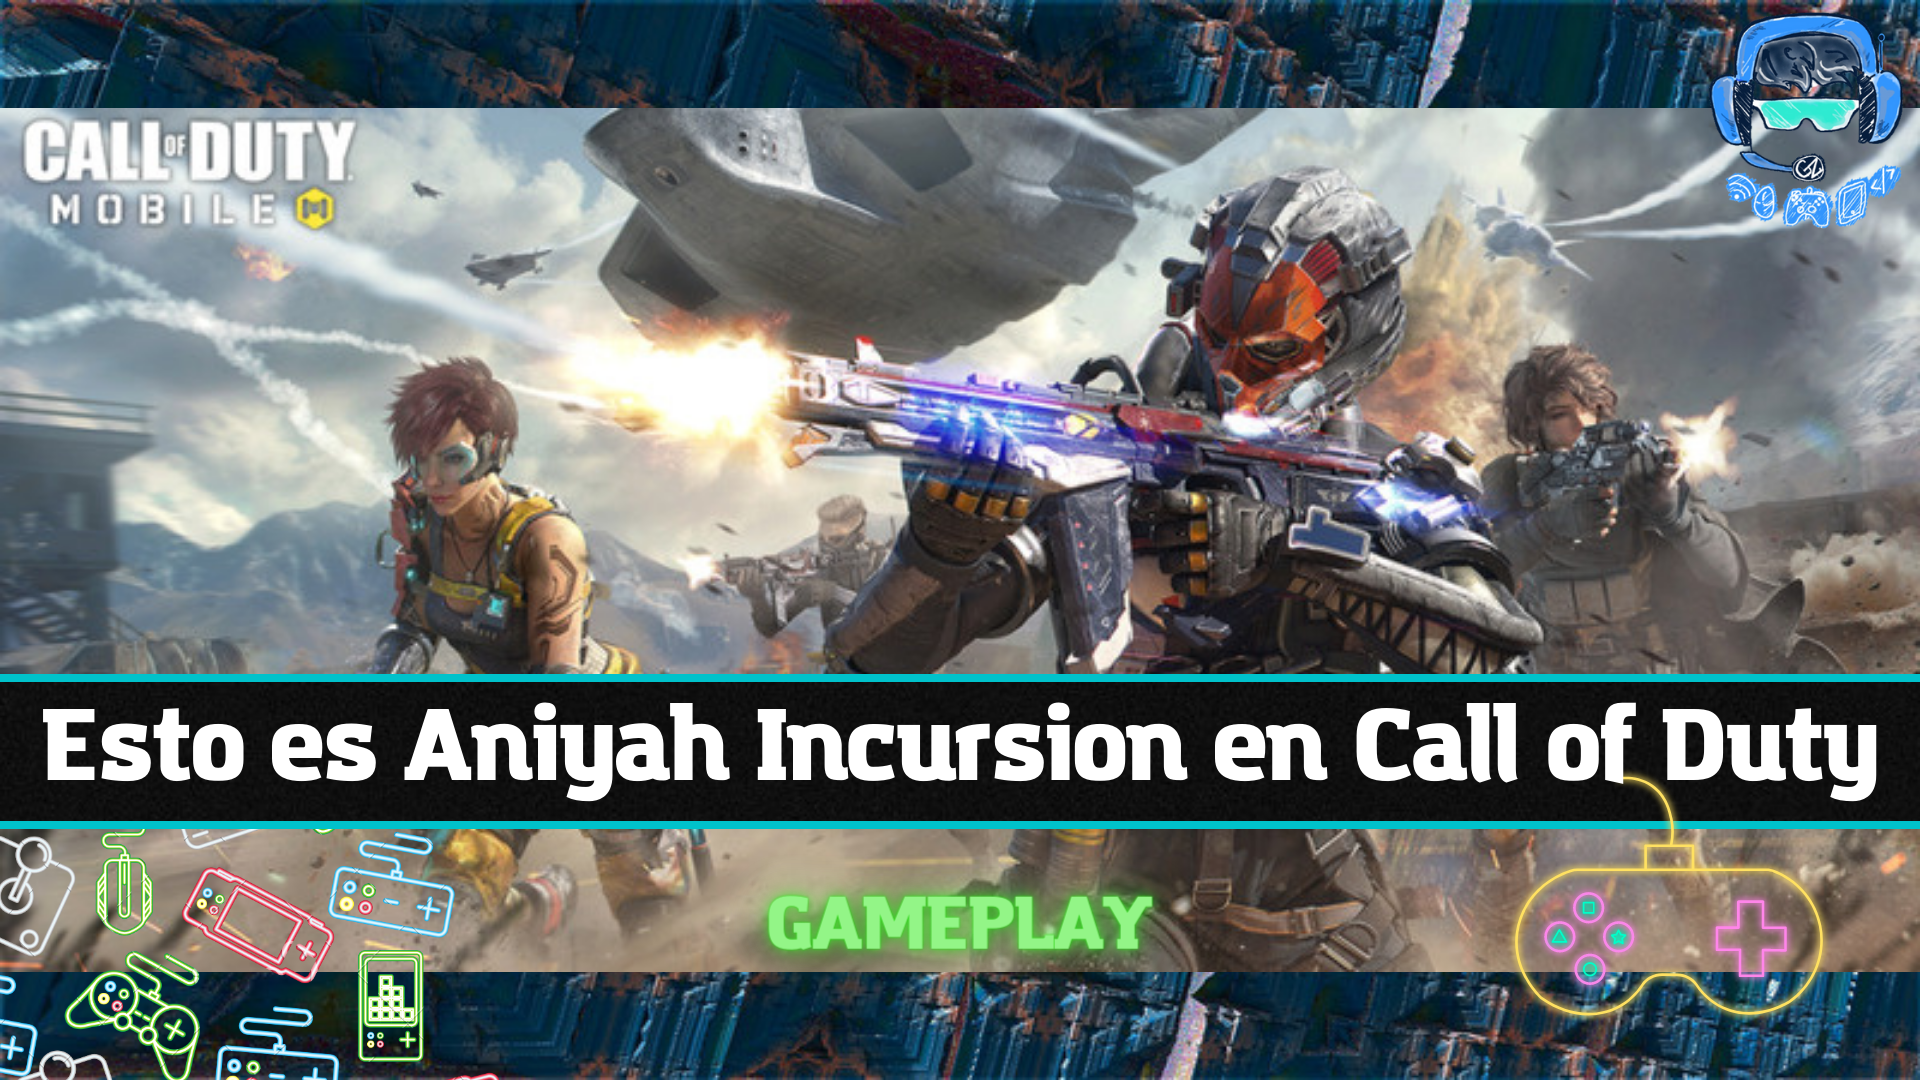 Esto es Aniyah Incursion en Call of Duty.png